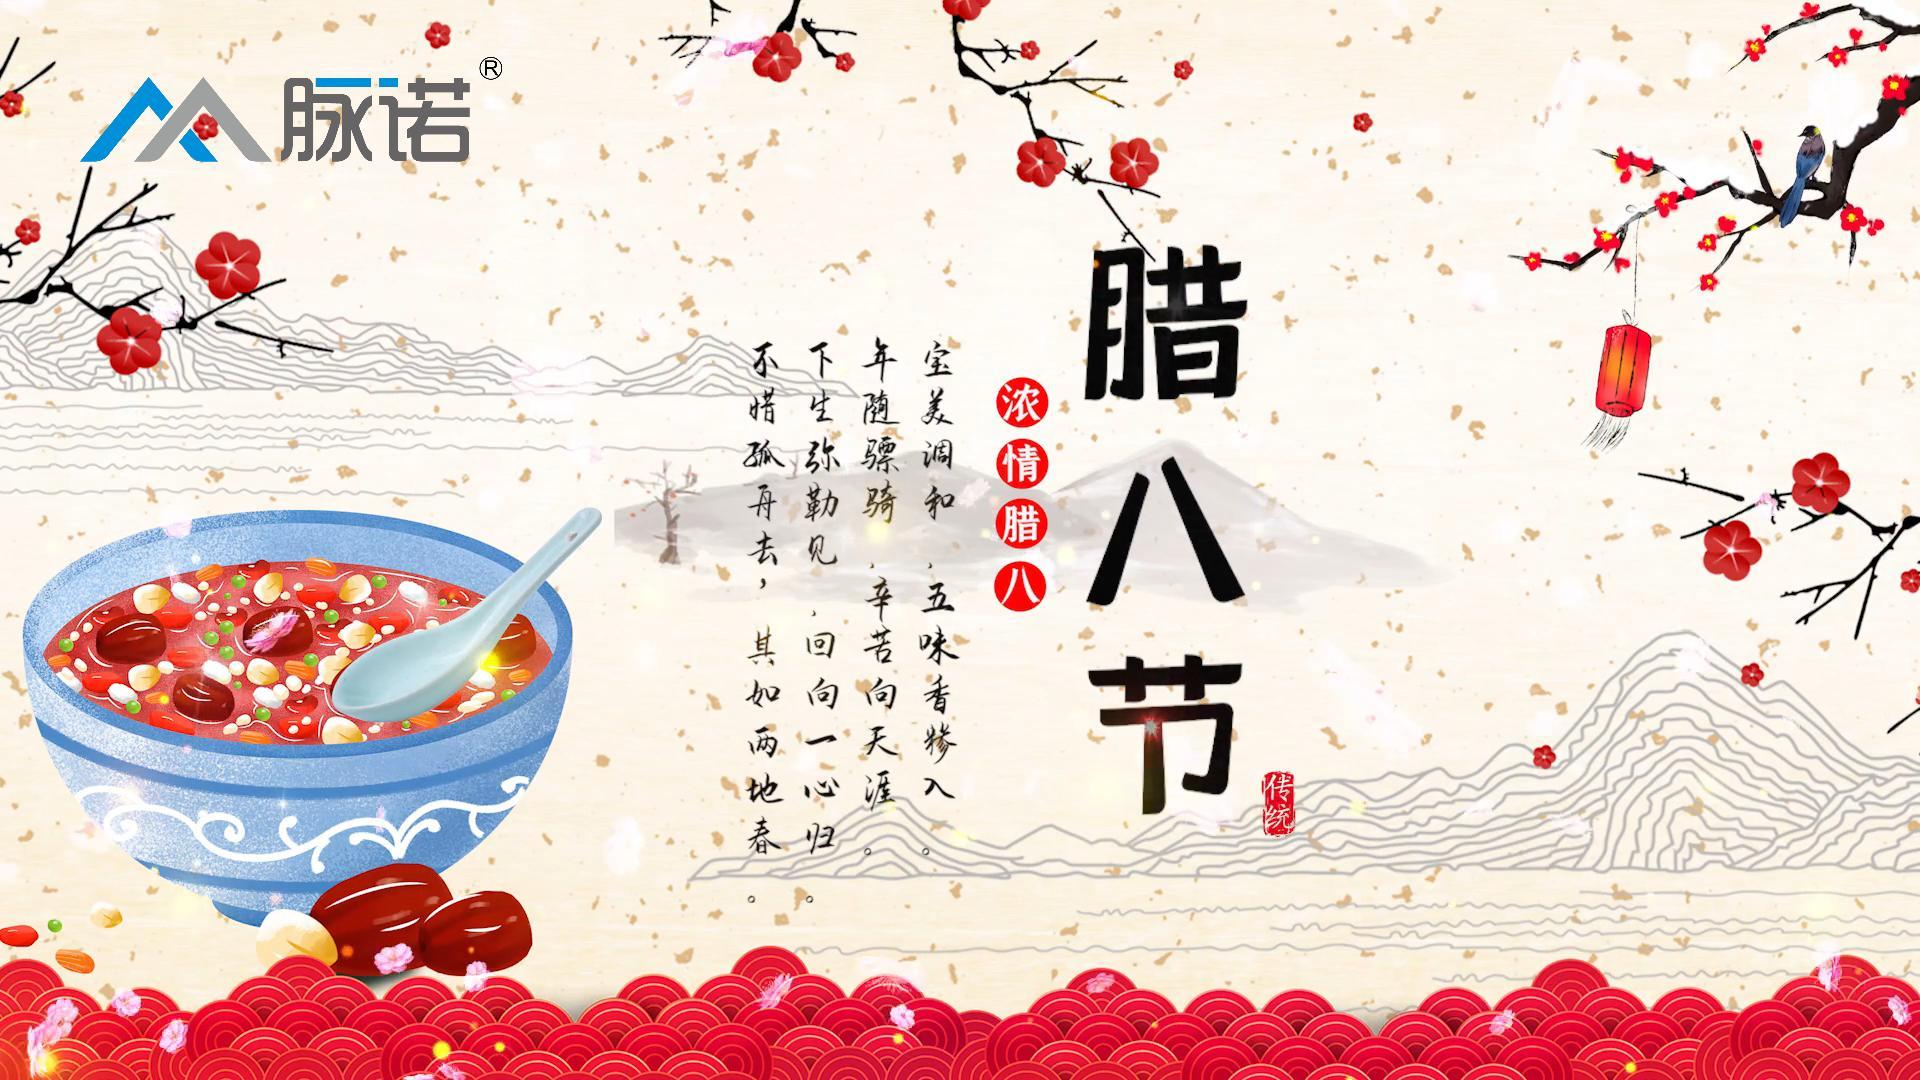 上海脉诺祝大家腊八节快乐！